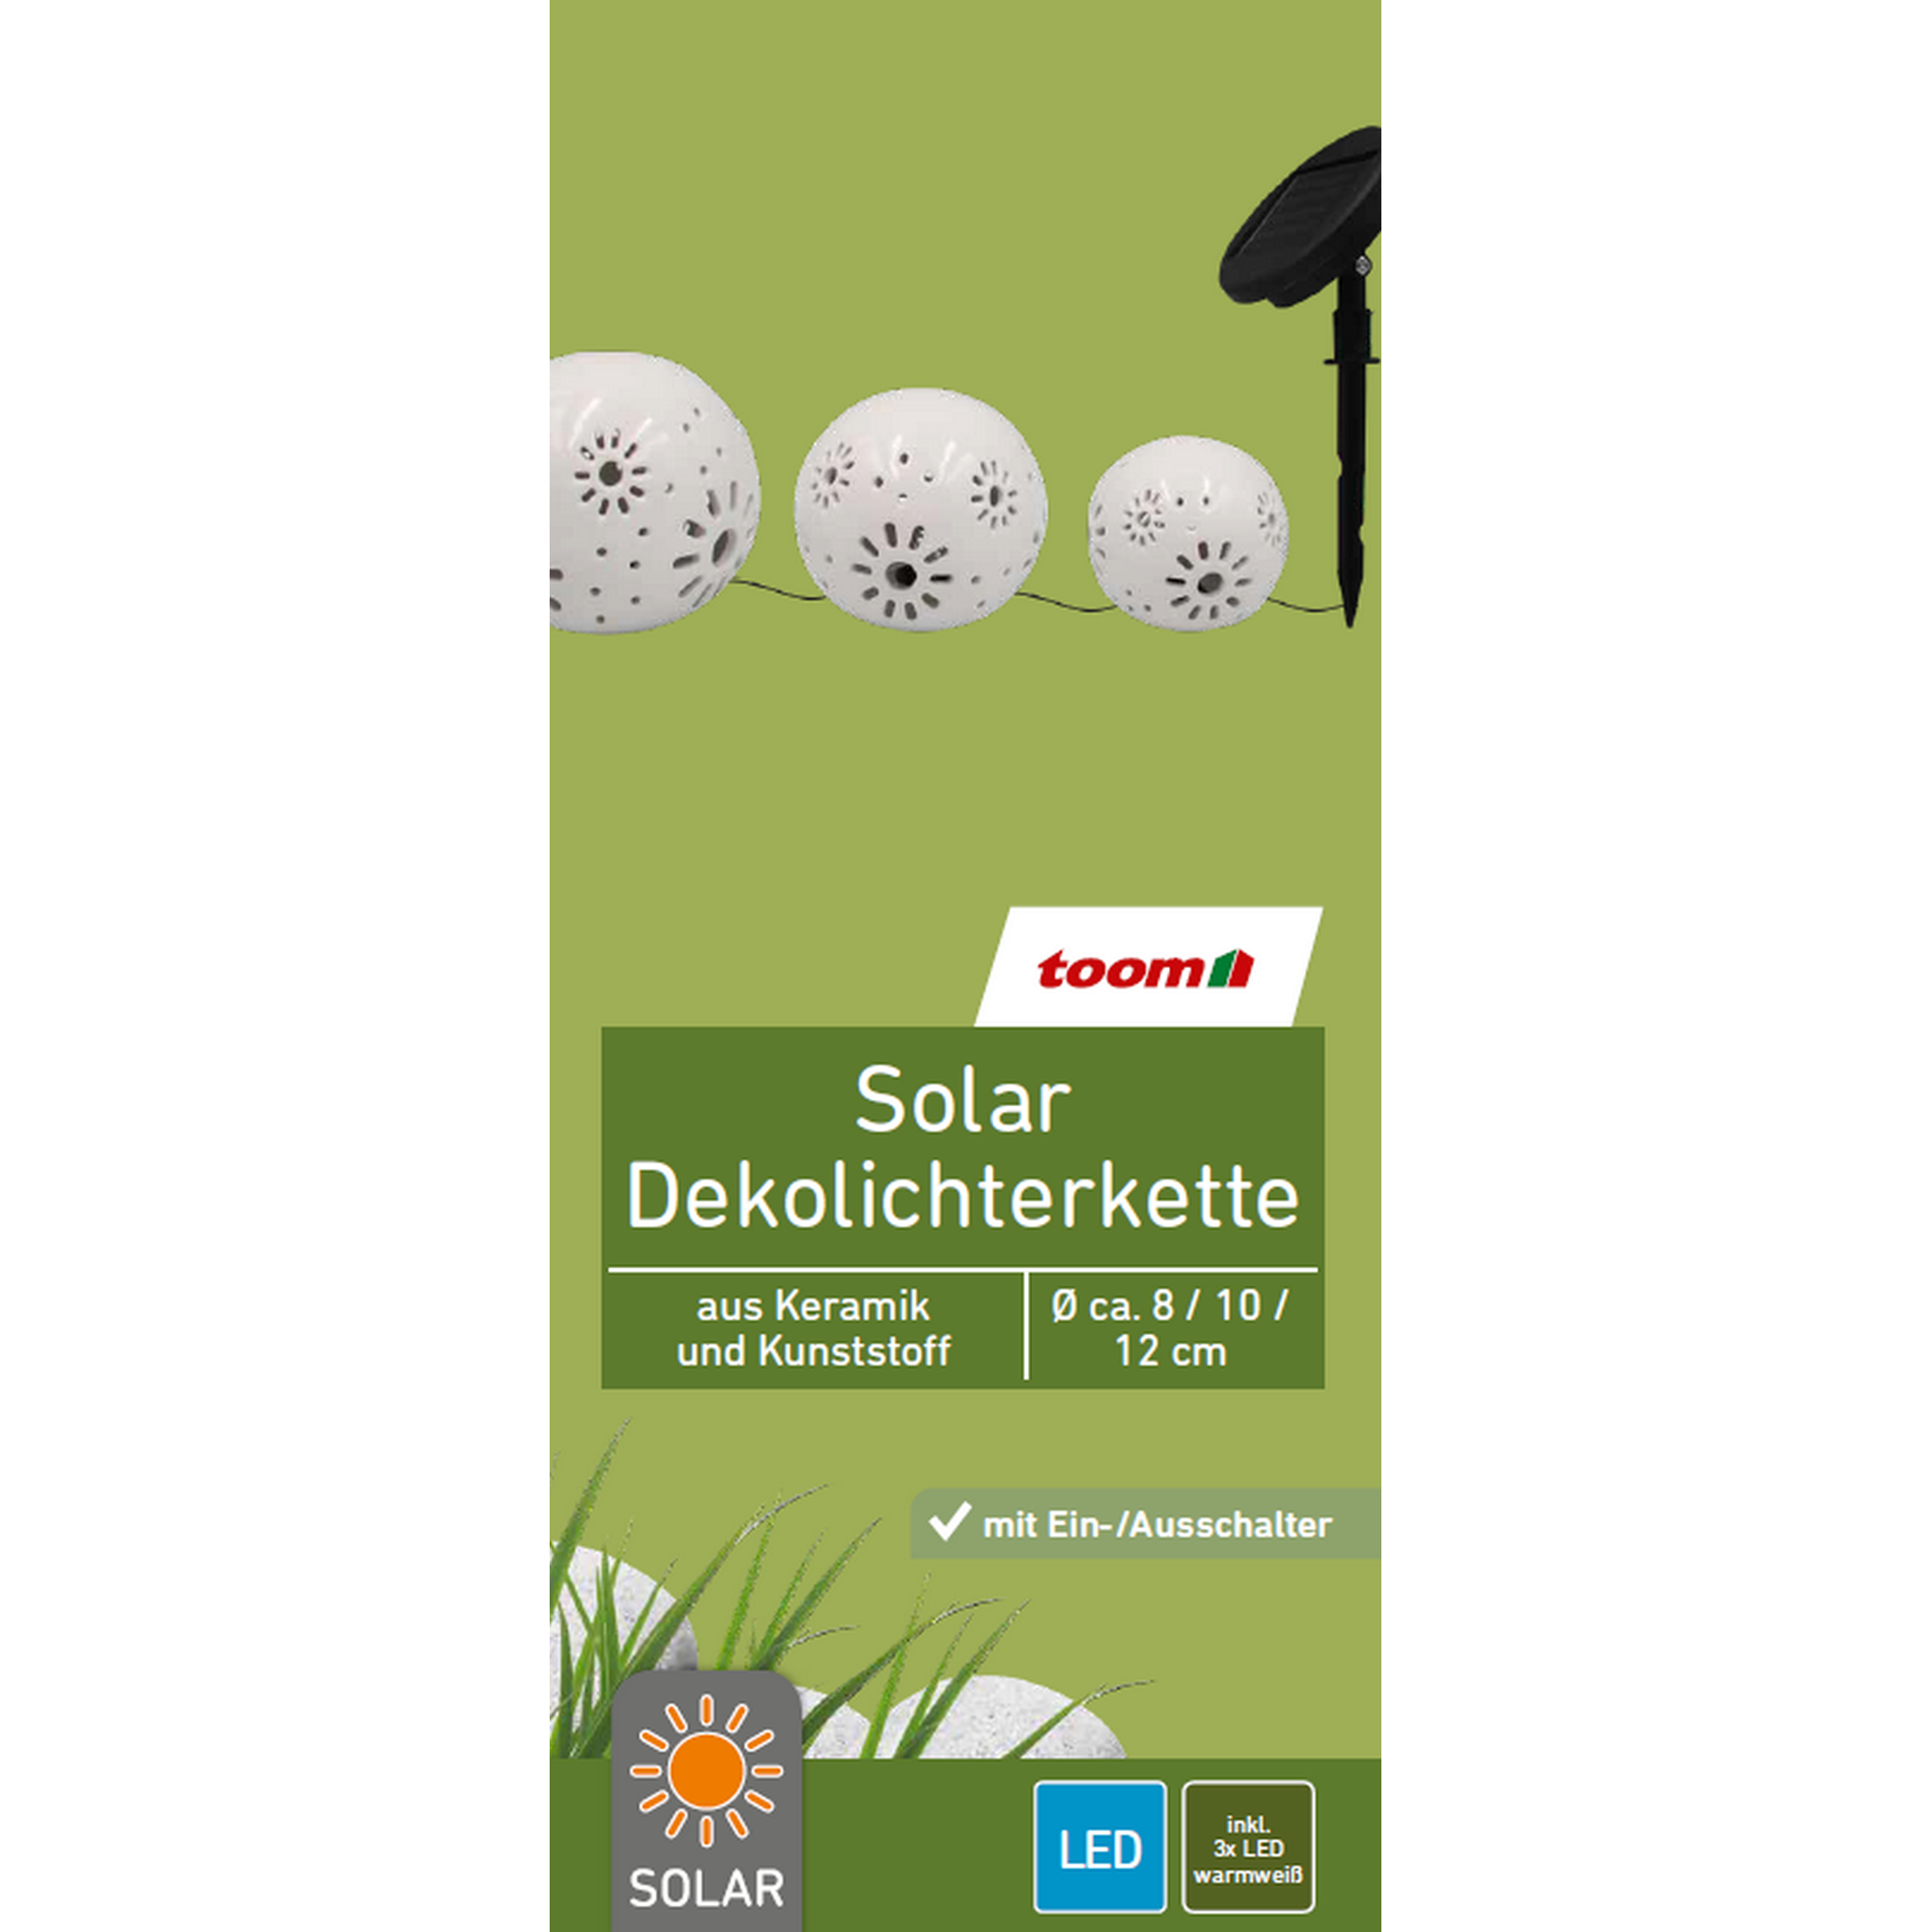 Solar-Lichterkette weiß Ø 8 / 10 / 12 cm + product picture